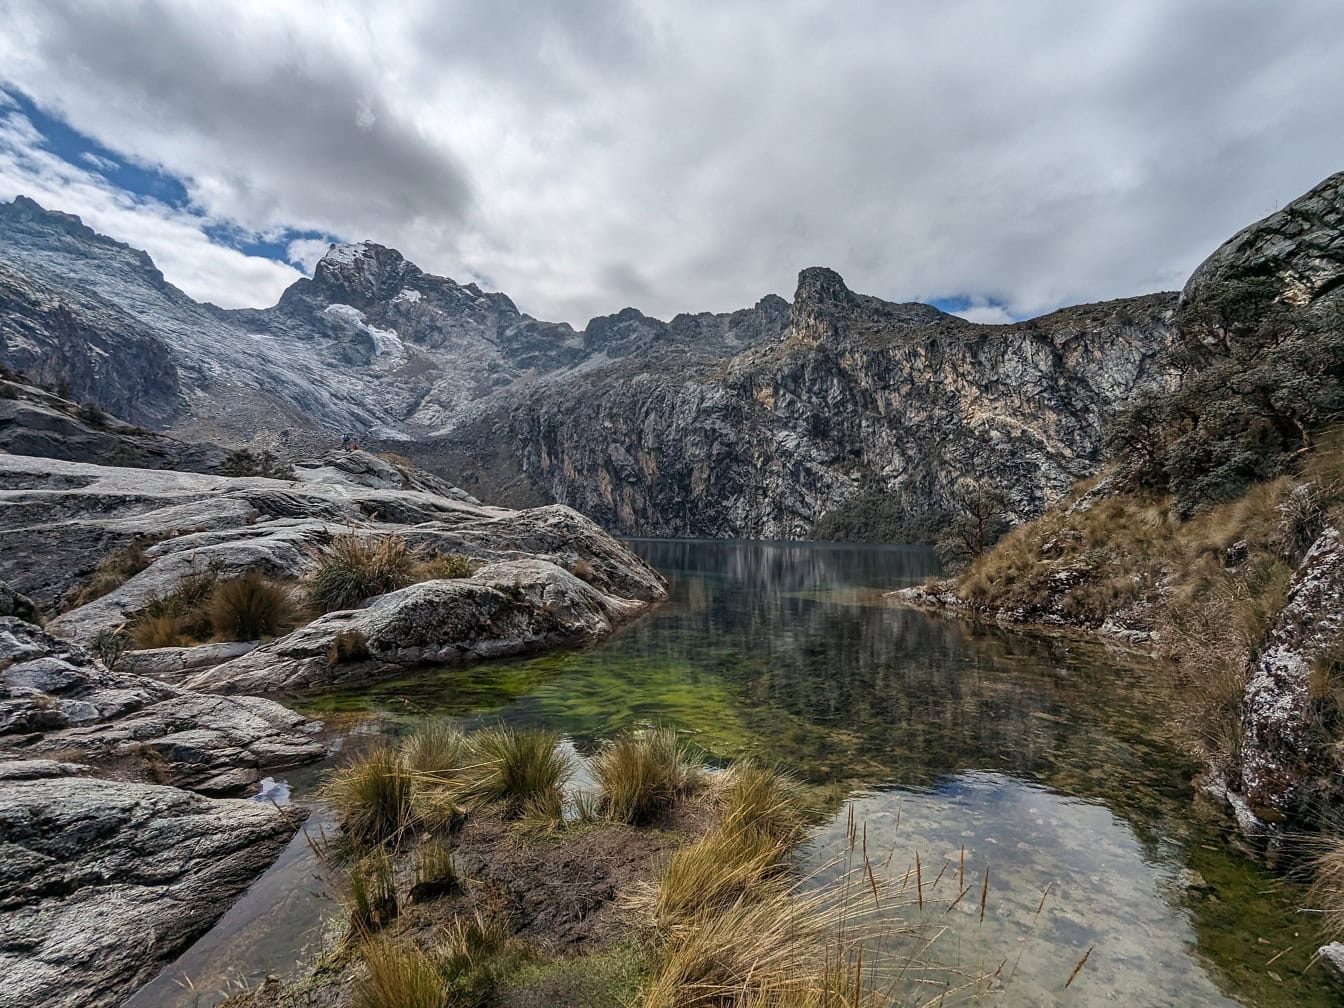 Paysage d’un lac Churup et de sommets enneigés dans un parc naturel des Andes près de Huaraz au Pérou, une vue panoramique sur l’Amérique latine